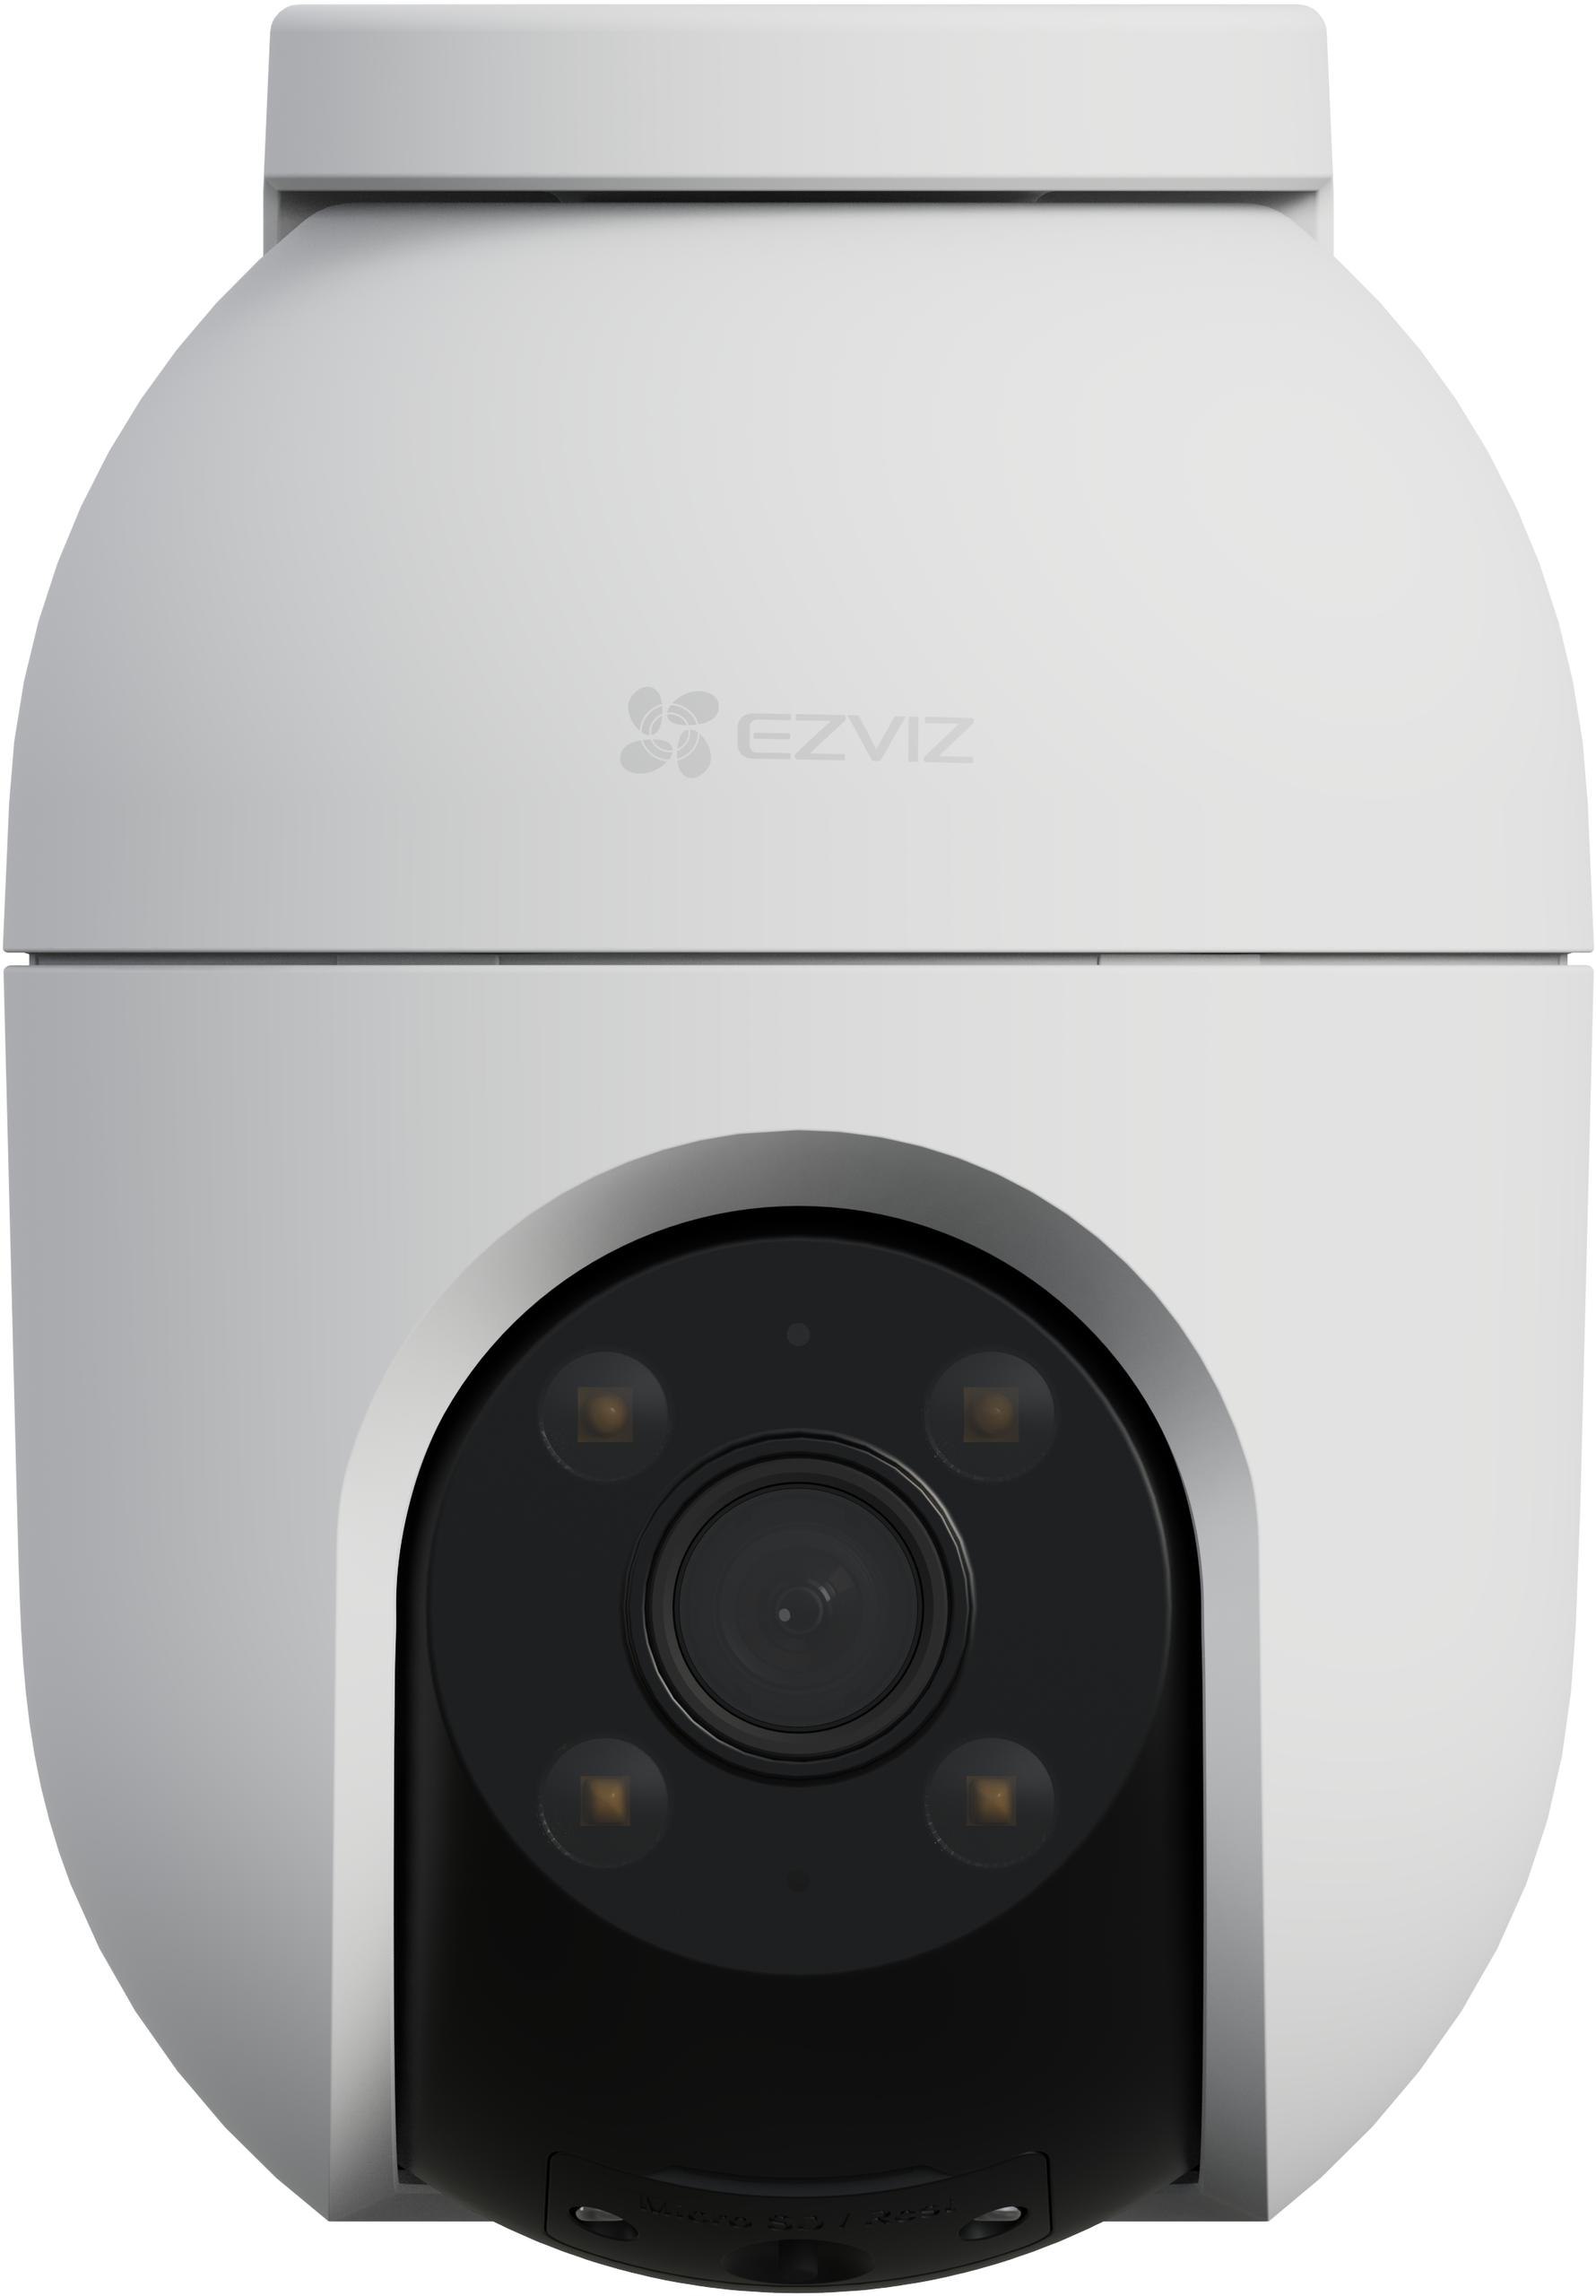 Obrotowa zewnętrzna kamera monitorująca Wi-Fi EZVIZ C8c 3K 5MPx 360° - specyfikacja i dane techniczne urządzenia: